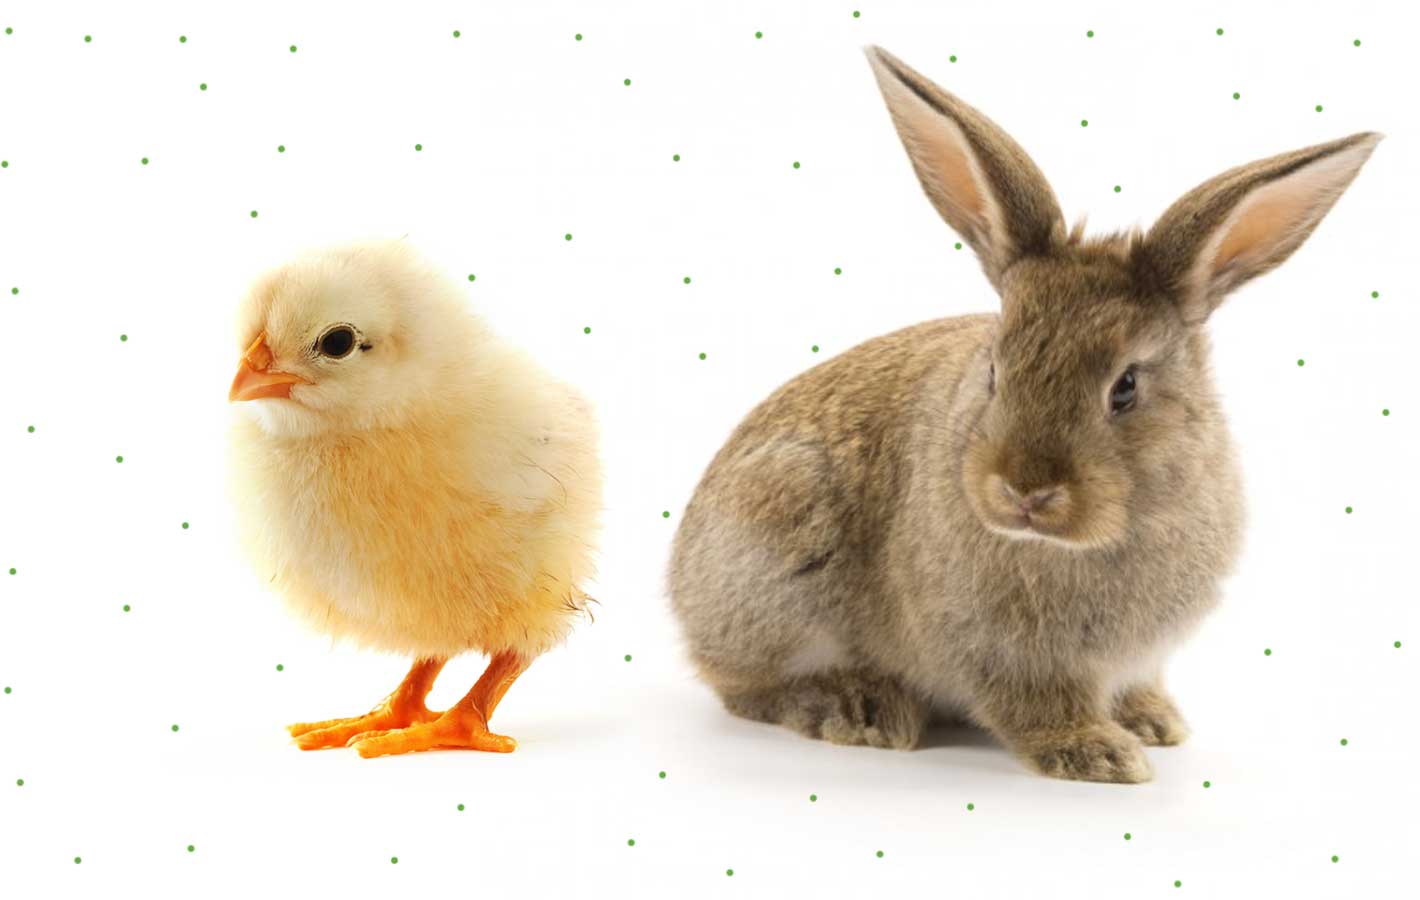 Wielkanoc 2017: Jesteś kurczakiem czy zającem? [QUIZ]